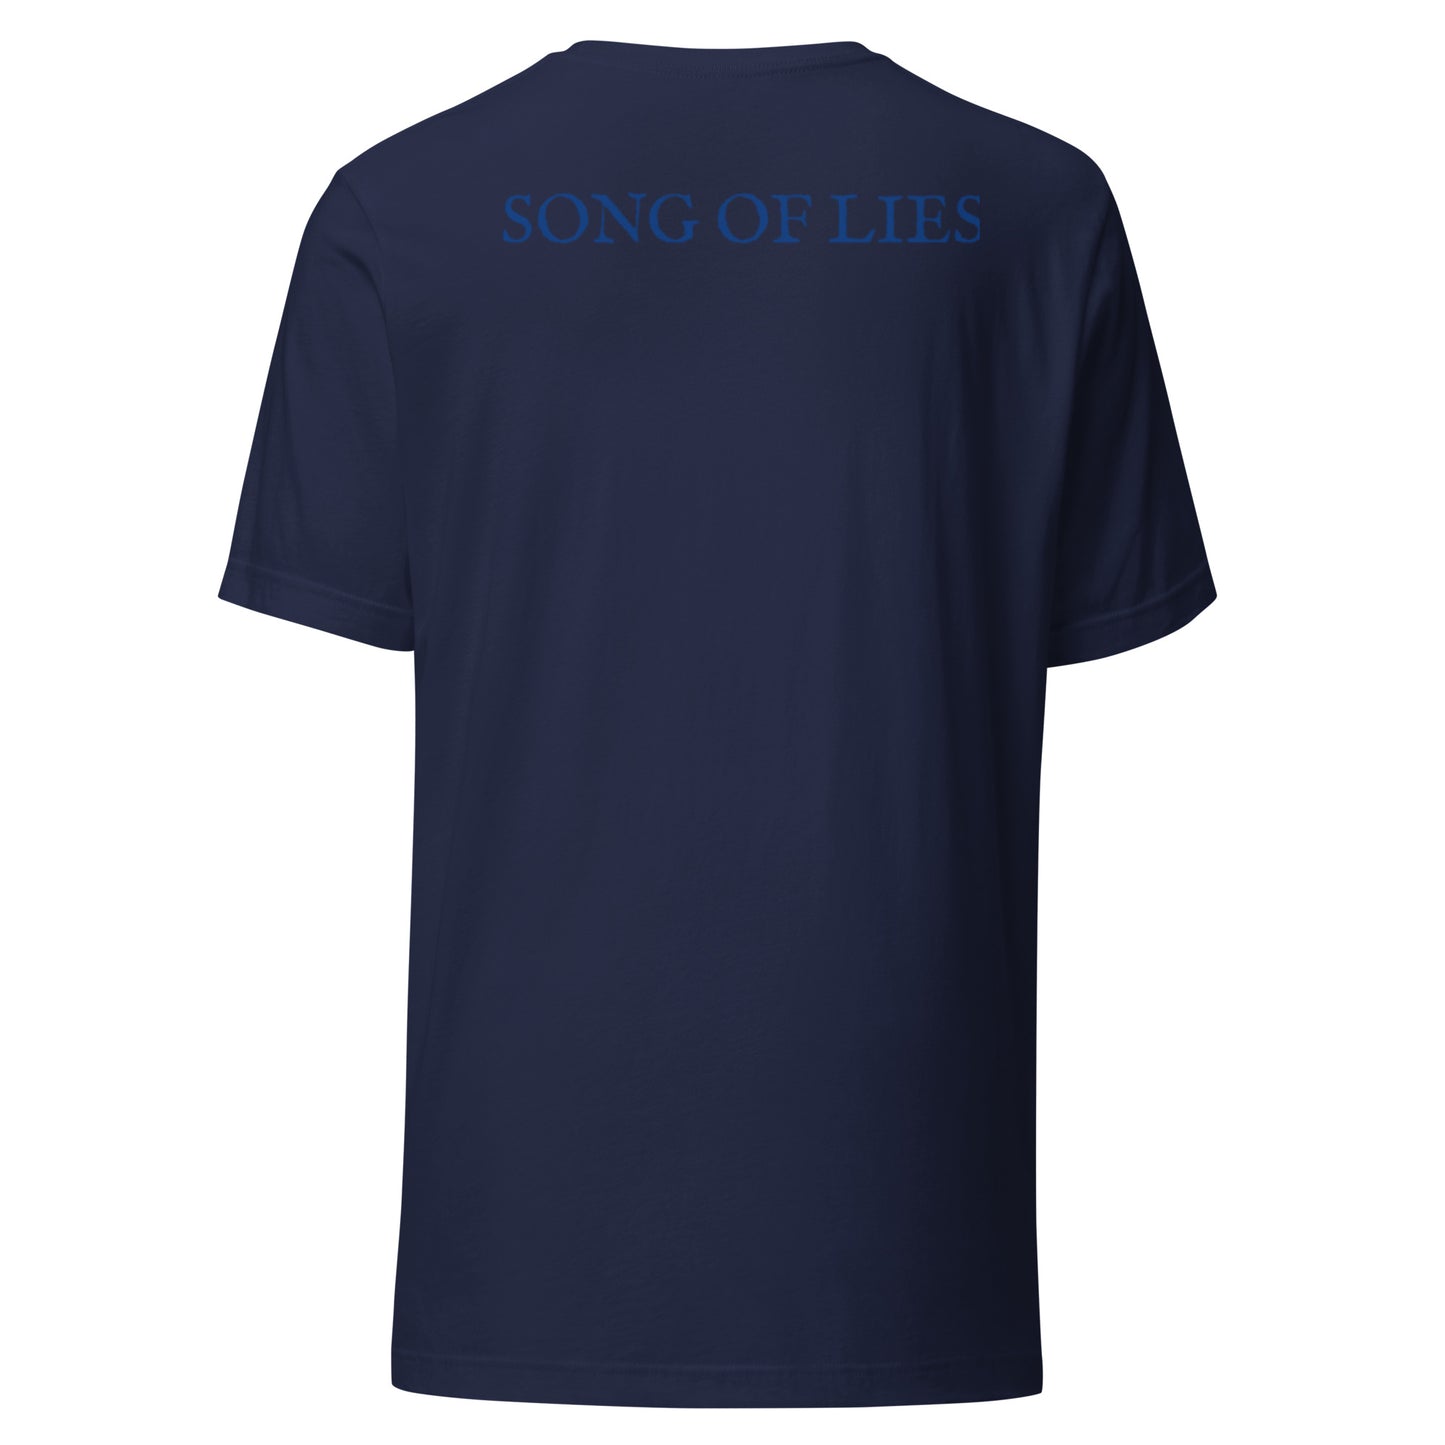 SONG OF LIES - Unisex t-shirt